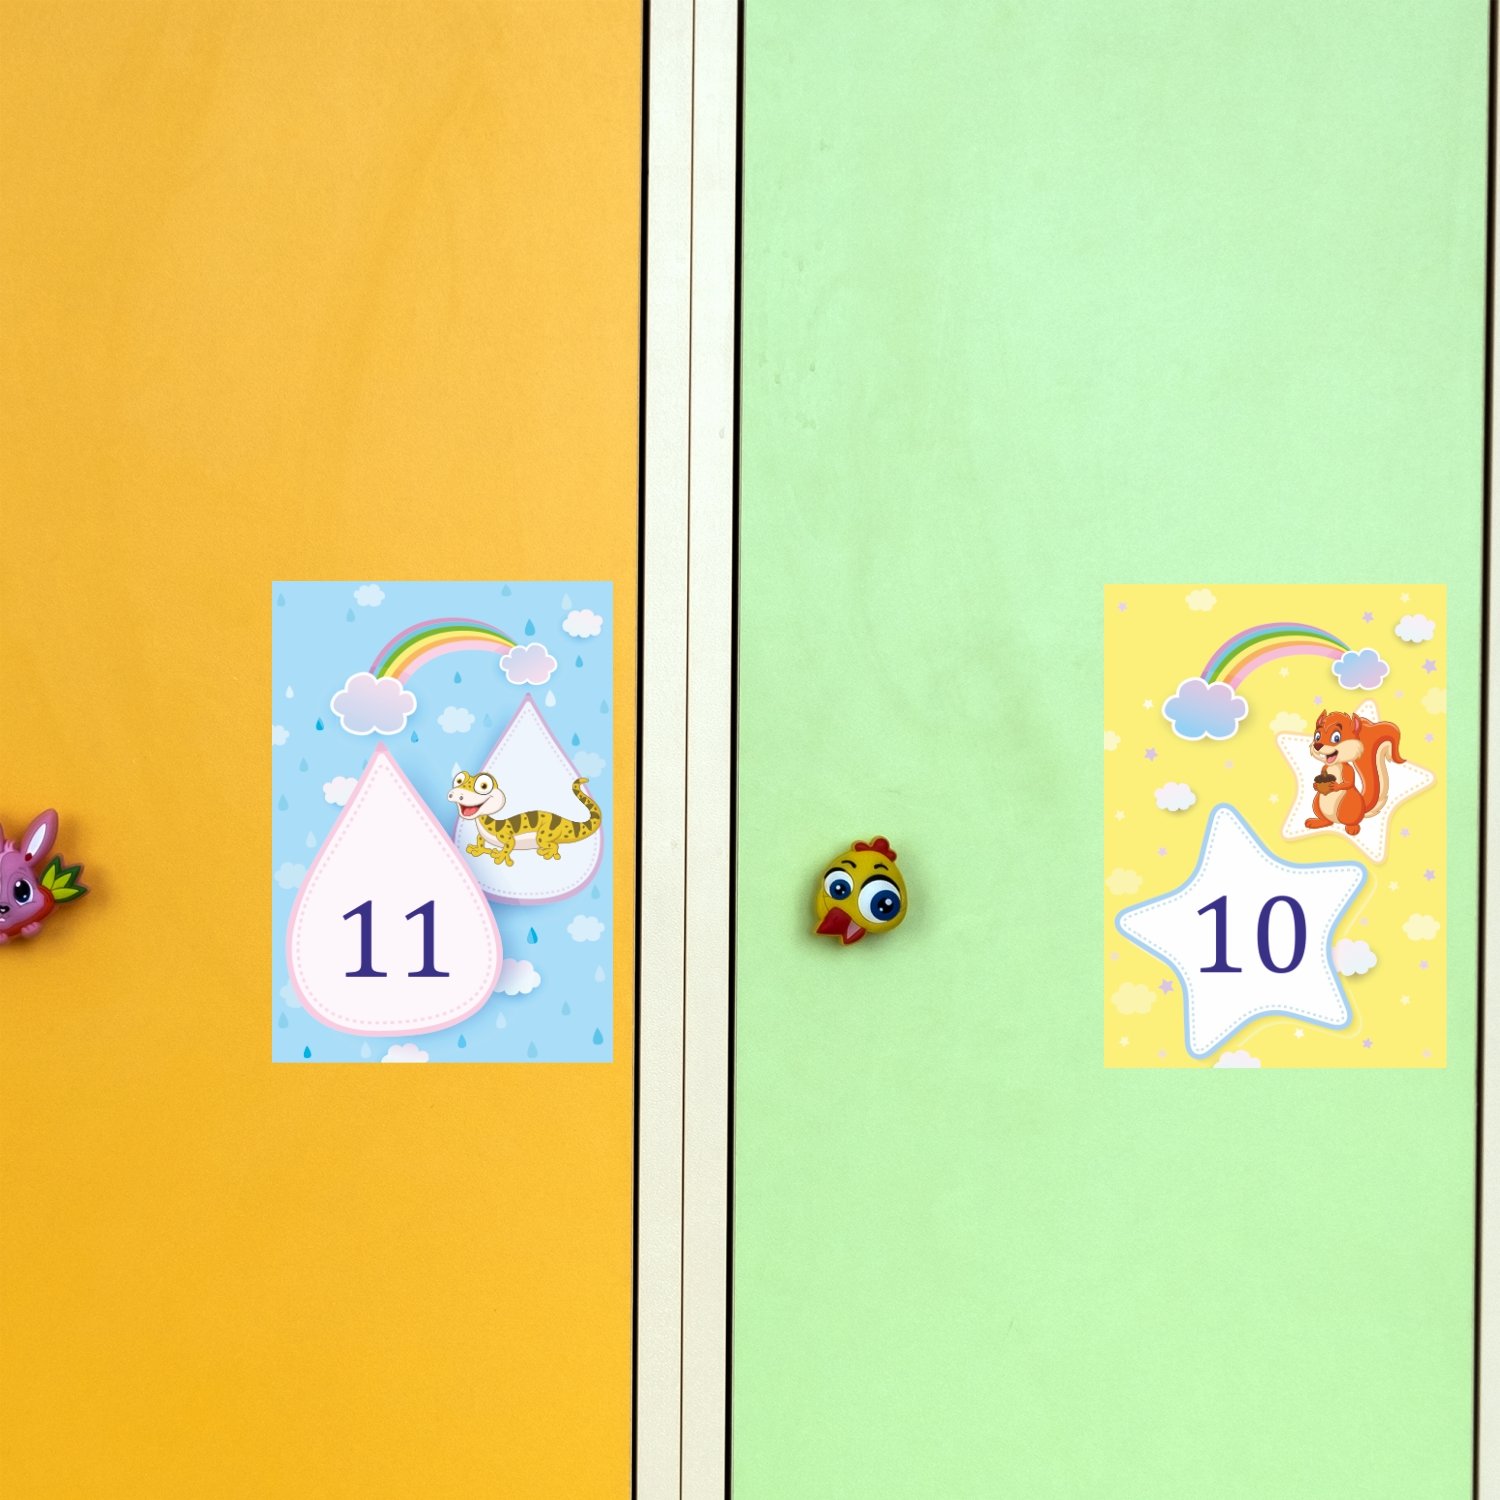 Ответы 100 к одному самый популярный рисунок на шкафчиках в детском саду